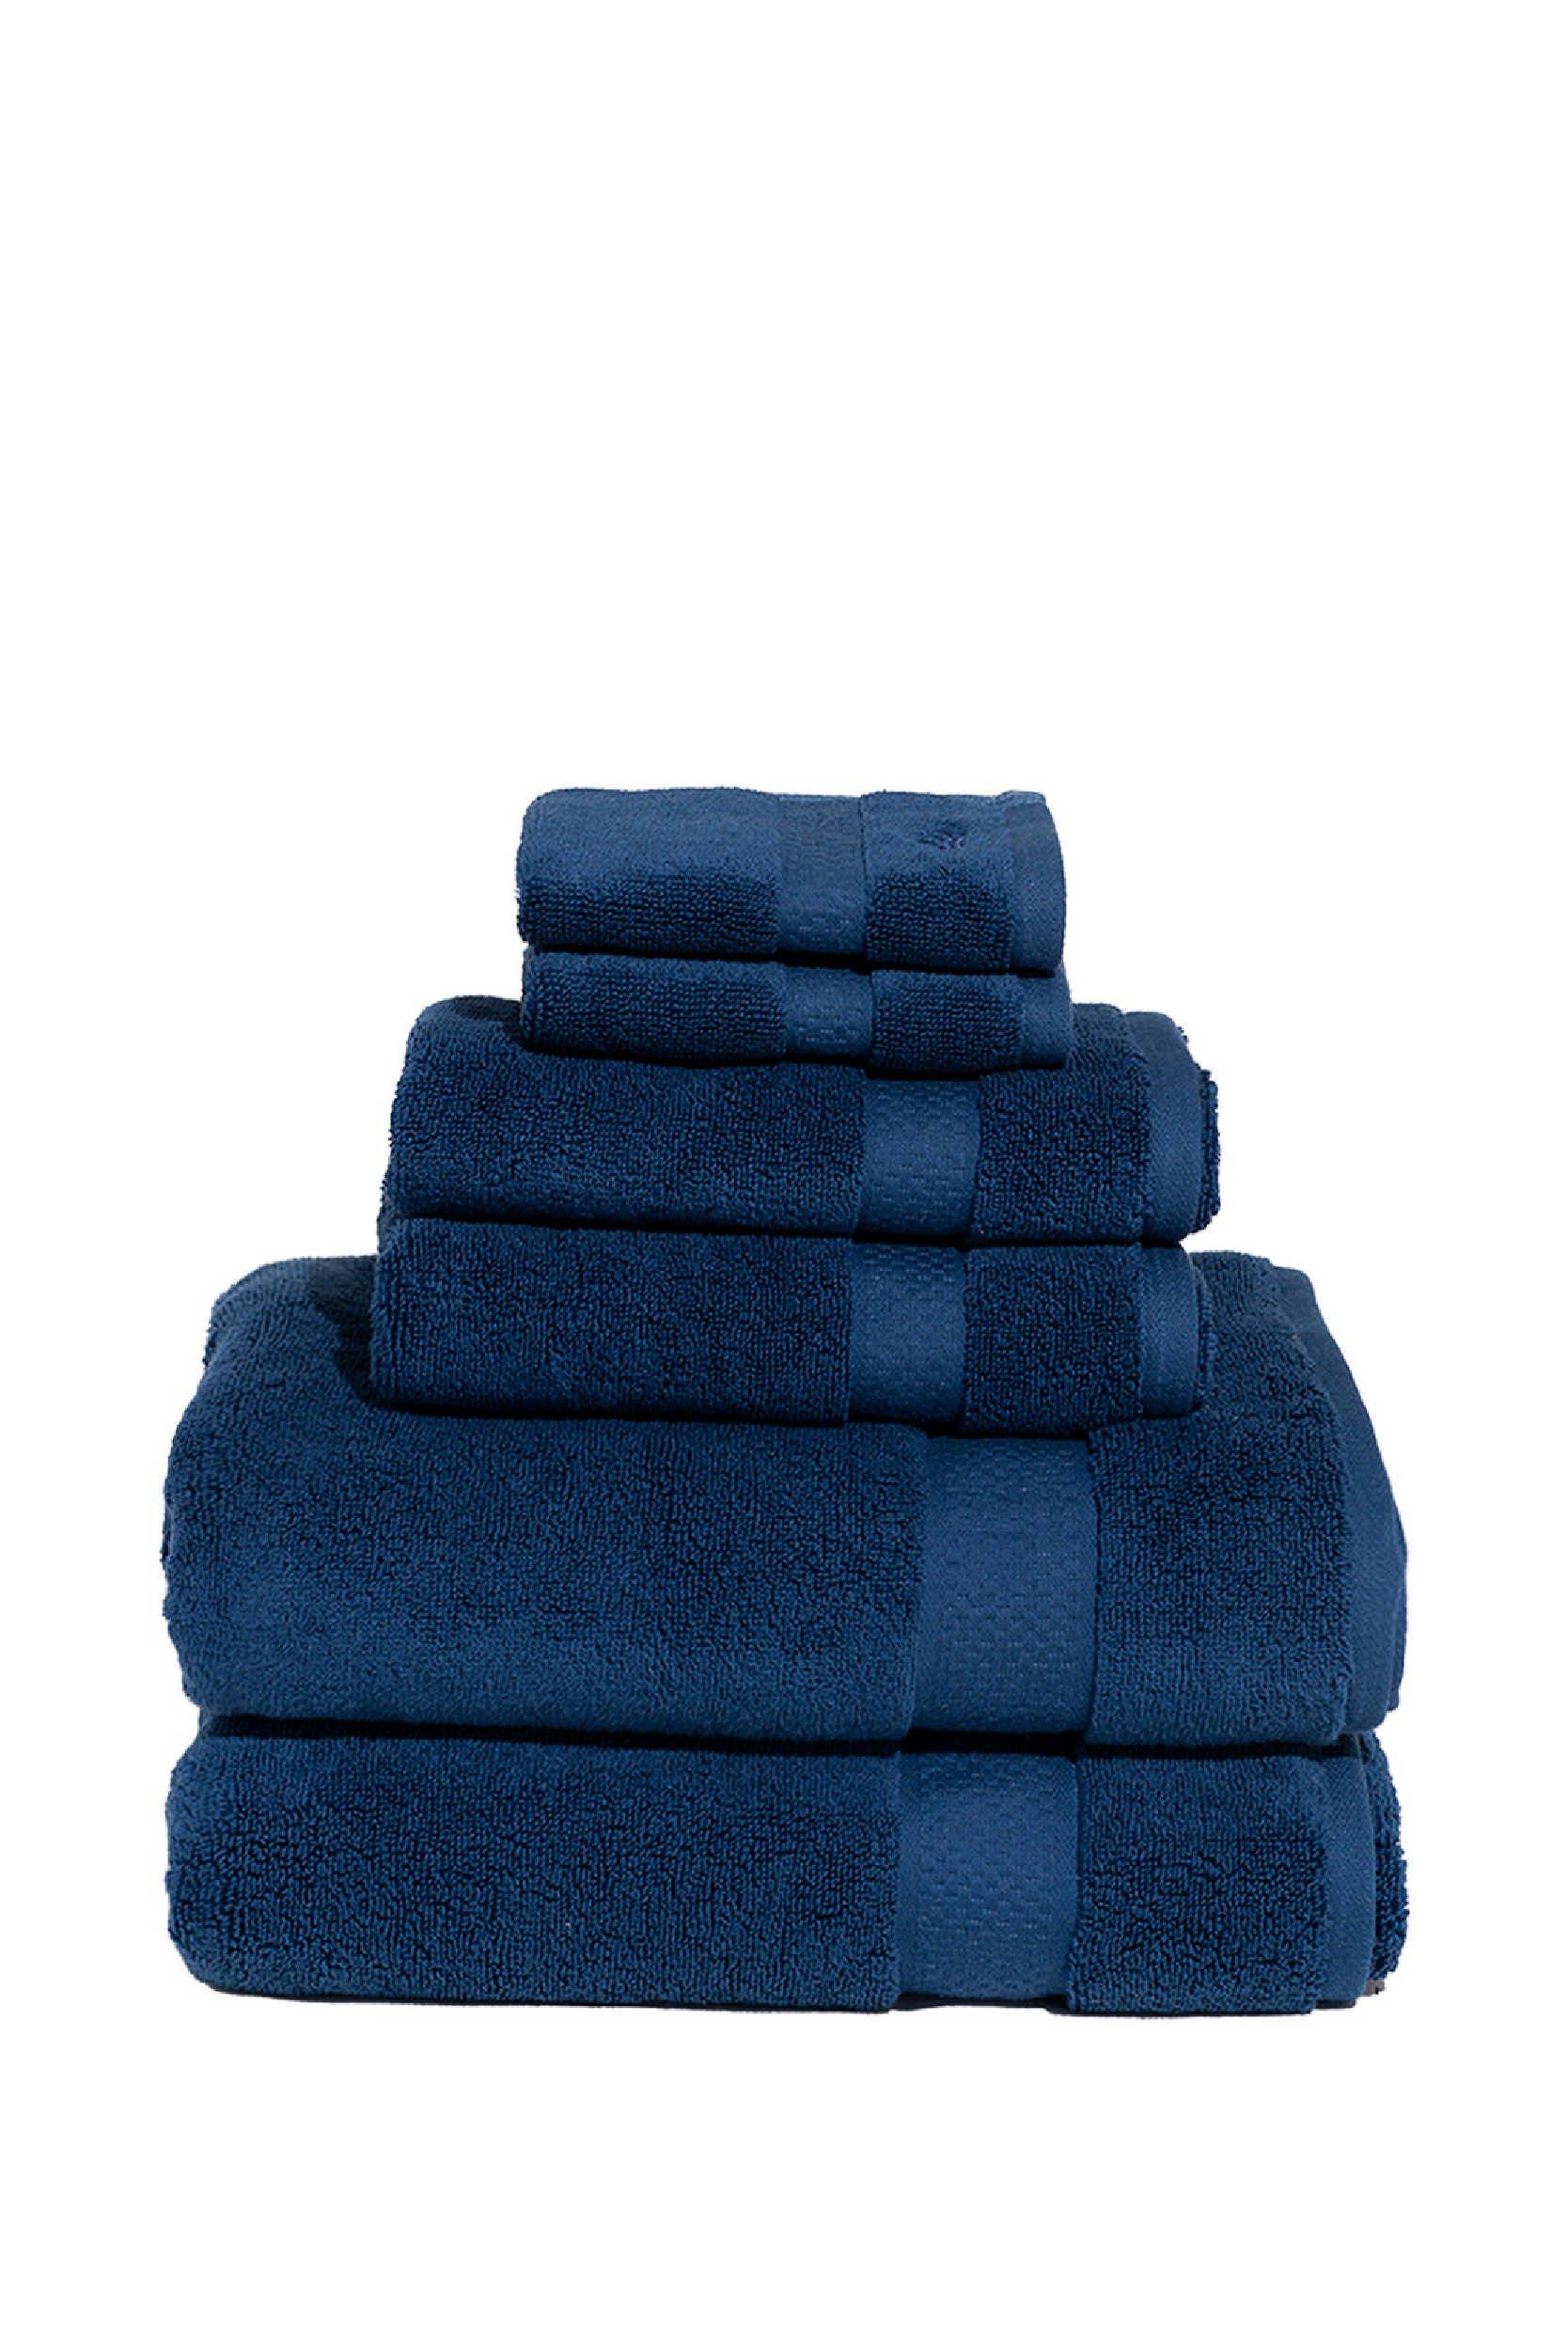 Vintage Royal Velvet by Fieldcrest Blue & Green Striped Fleur De Lis Plush  Set of Two Bath Towels Blue Fleur De Lys Bath Towel 